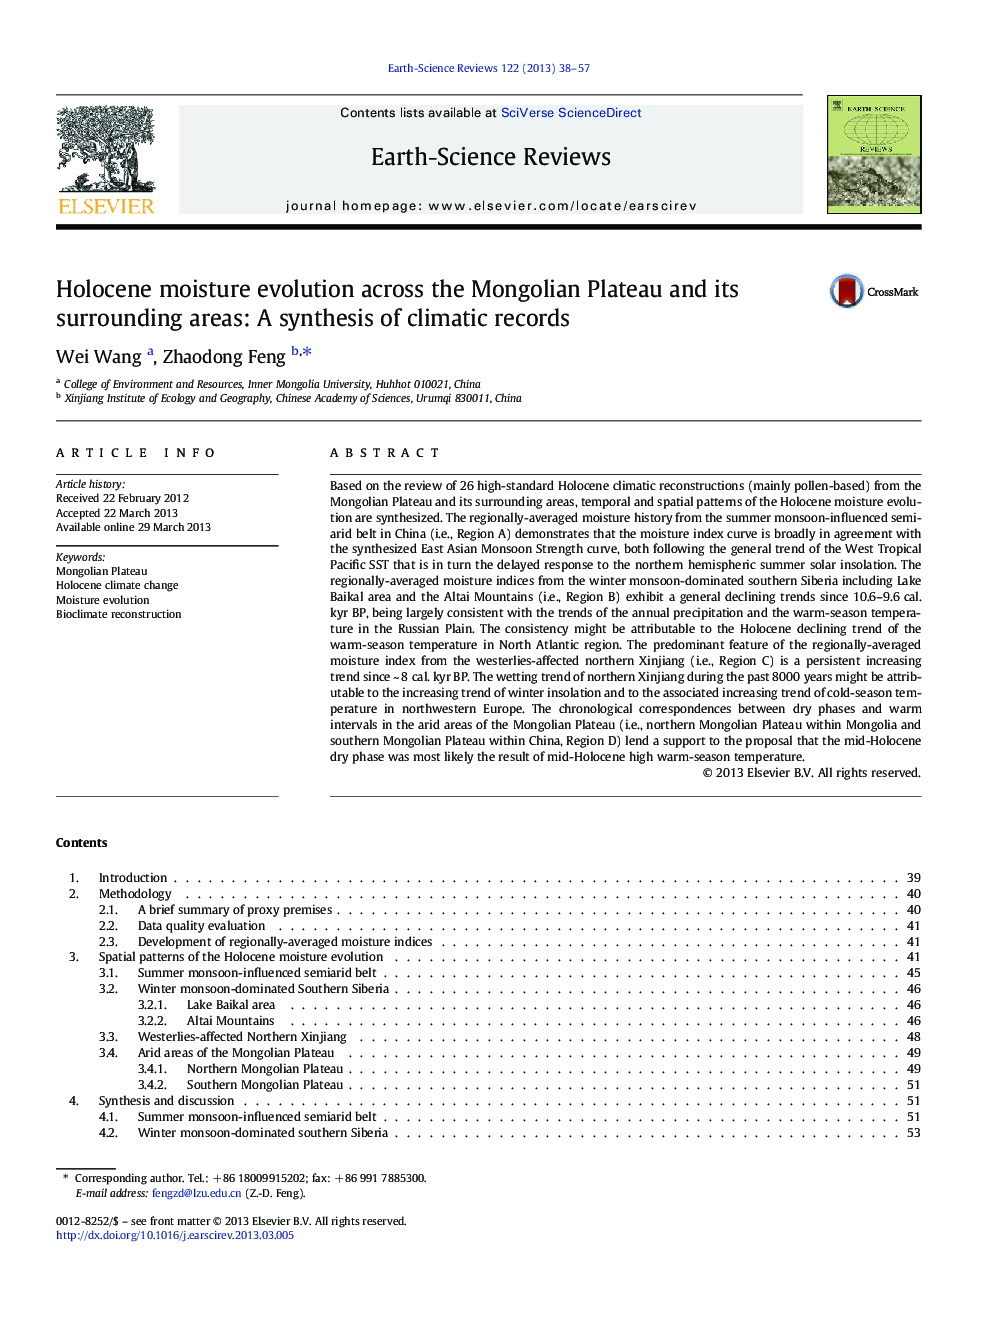 تکامل رطوبت هولوسن در فلات مغولی و مناطق اطراف آن: تلفیق پرونده های آب و هوایی 